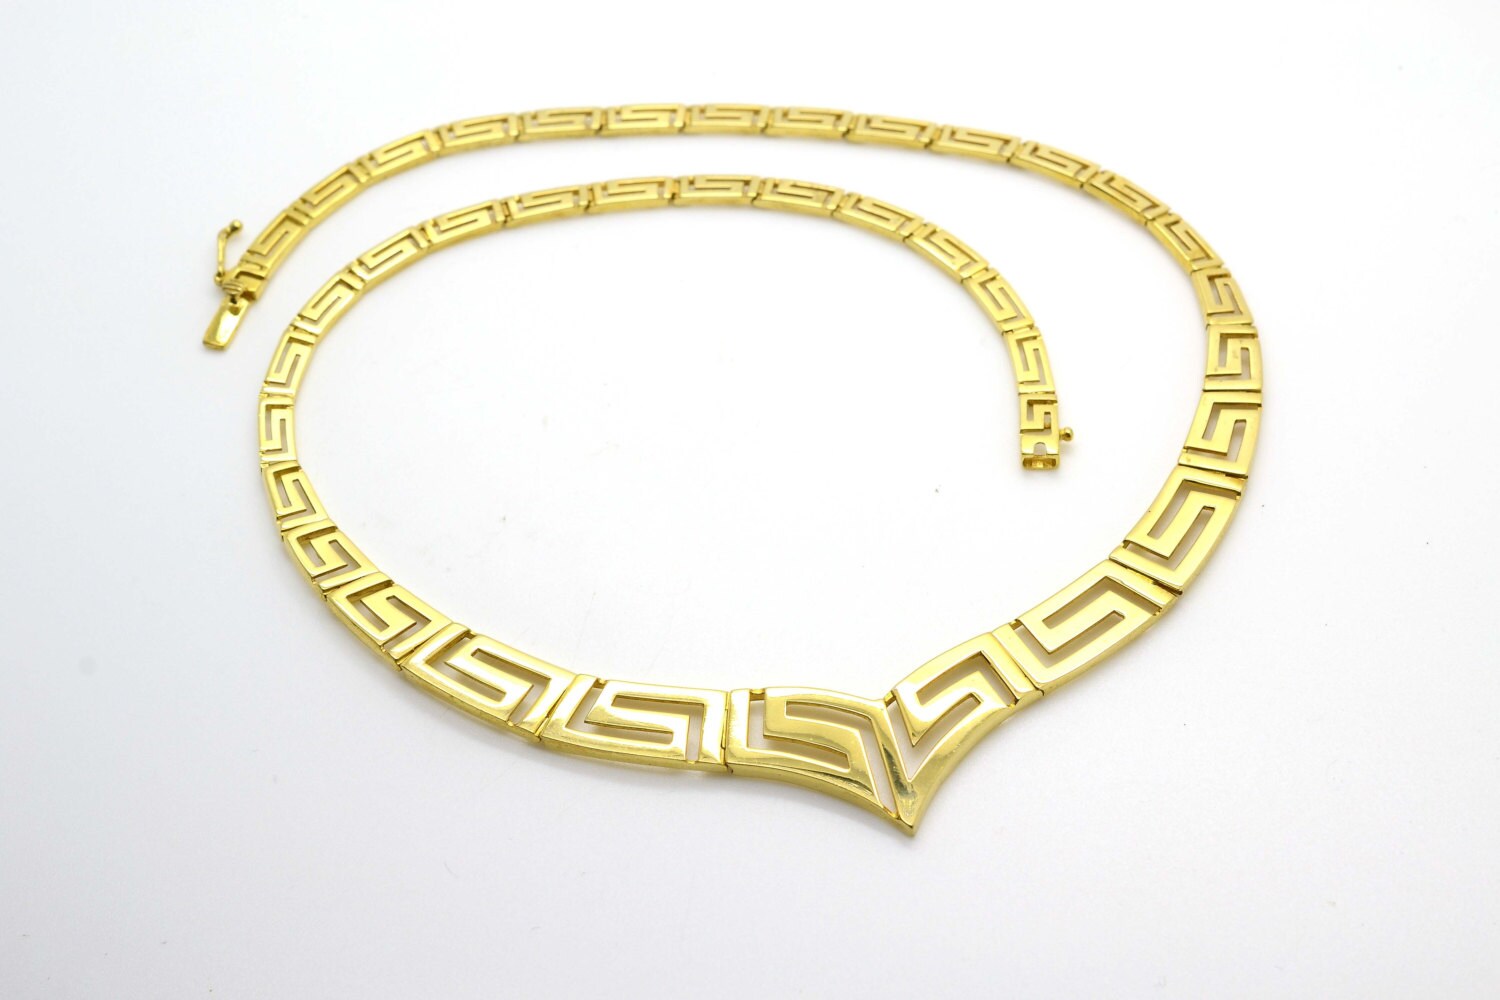 NEW WOMEN'S GREEK KEY NECKLACE & EARRING, BRACELET SET YELLOW GOLD PLATED  BEAUTY | eBay